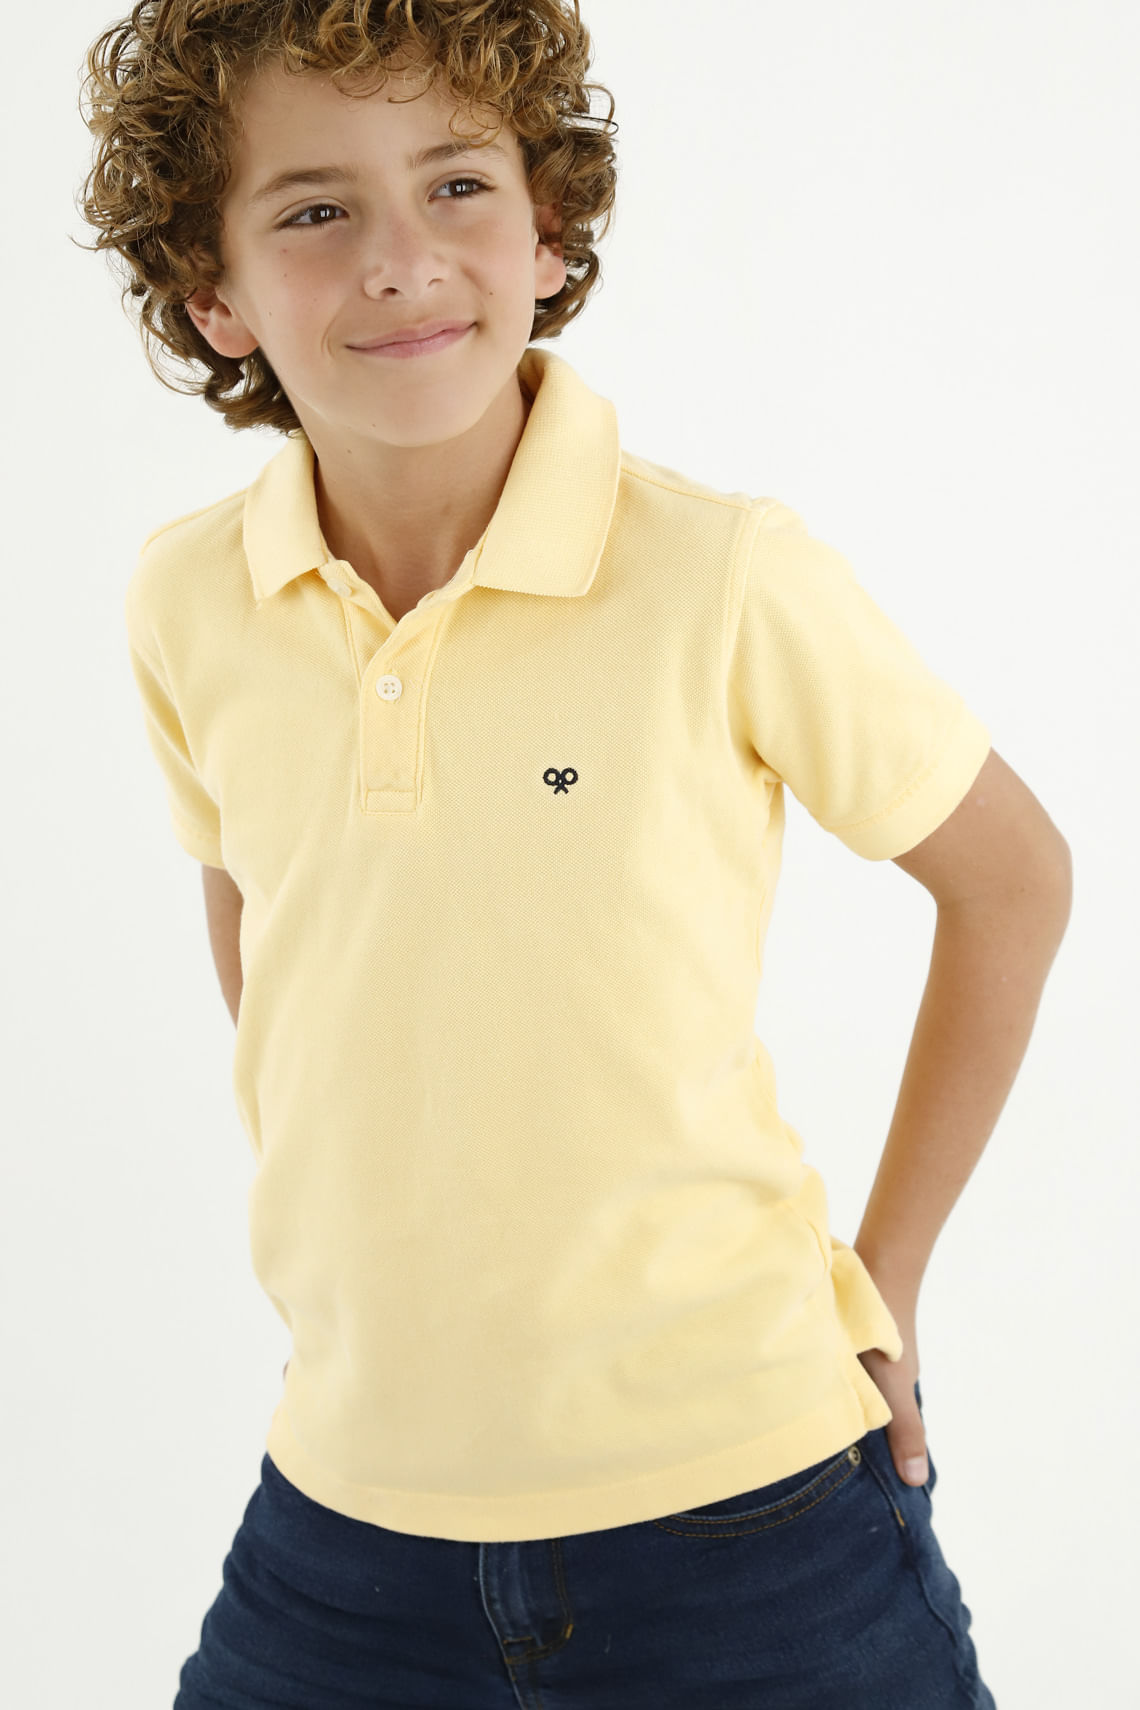 Camisas Polo para Niños | Colores y Estampadas | Tennis - Tennis | Tienda  de Ropa Online en Colombia